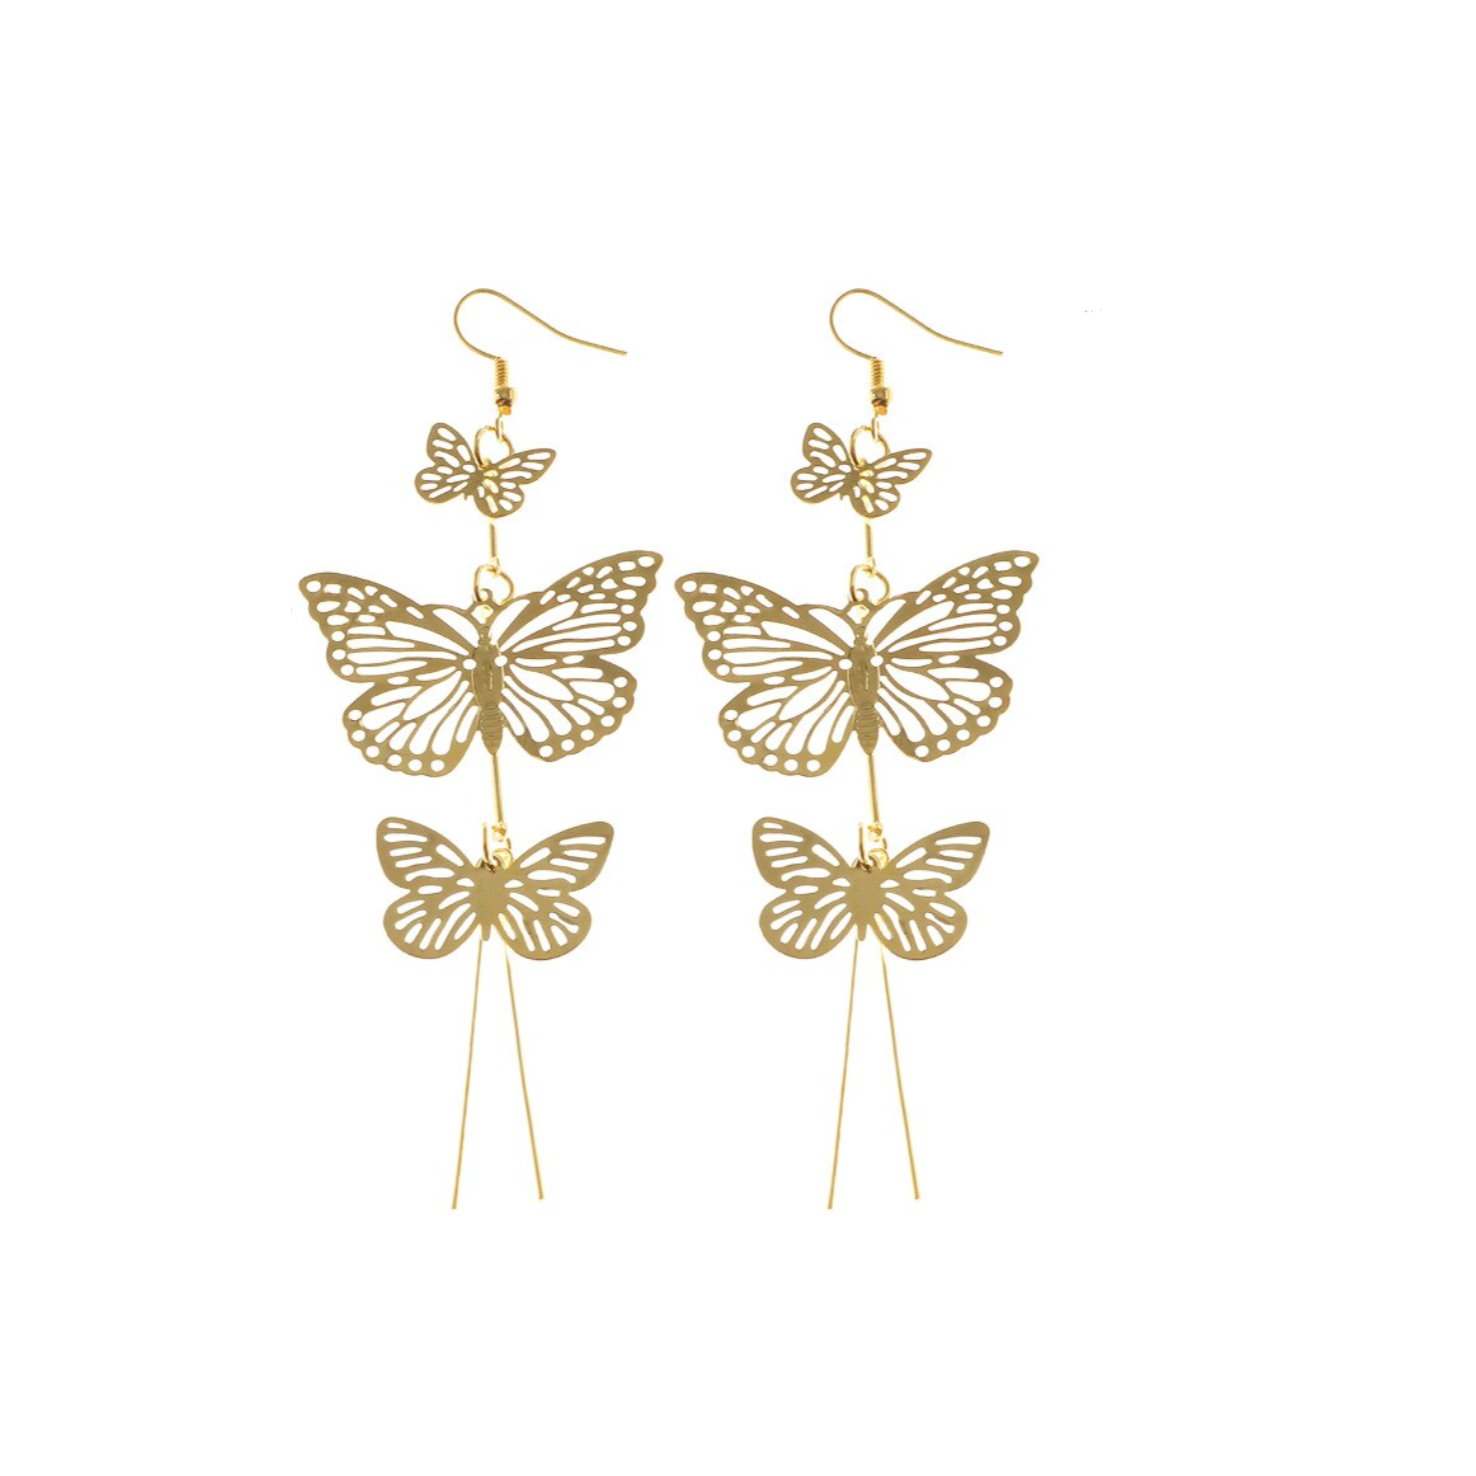 Boucles d'oreilles dorées pendantes 3 papillons dorés. Détails produit : Couleur or. Métal doré. Longueur 10 cm.